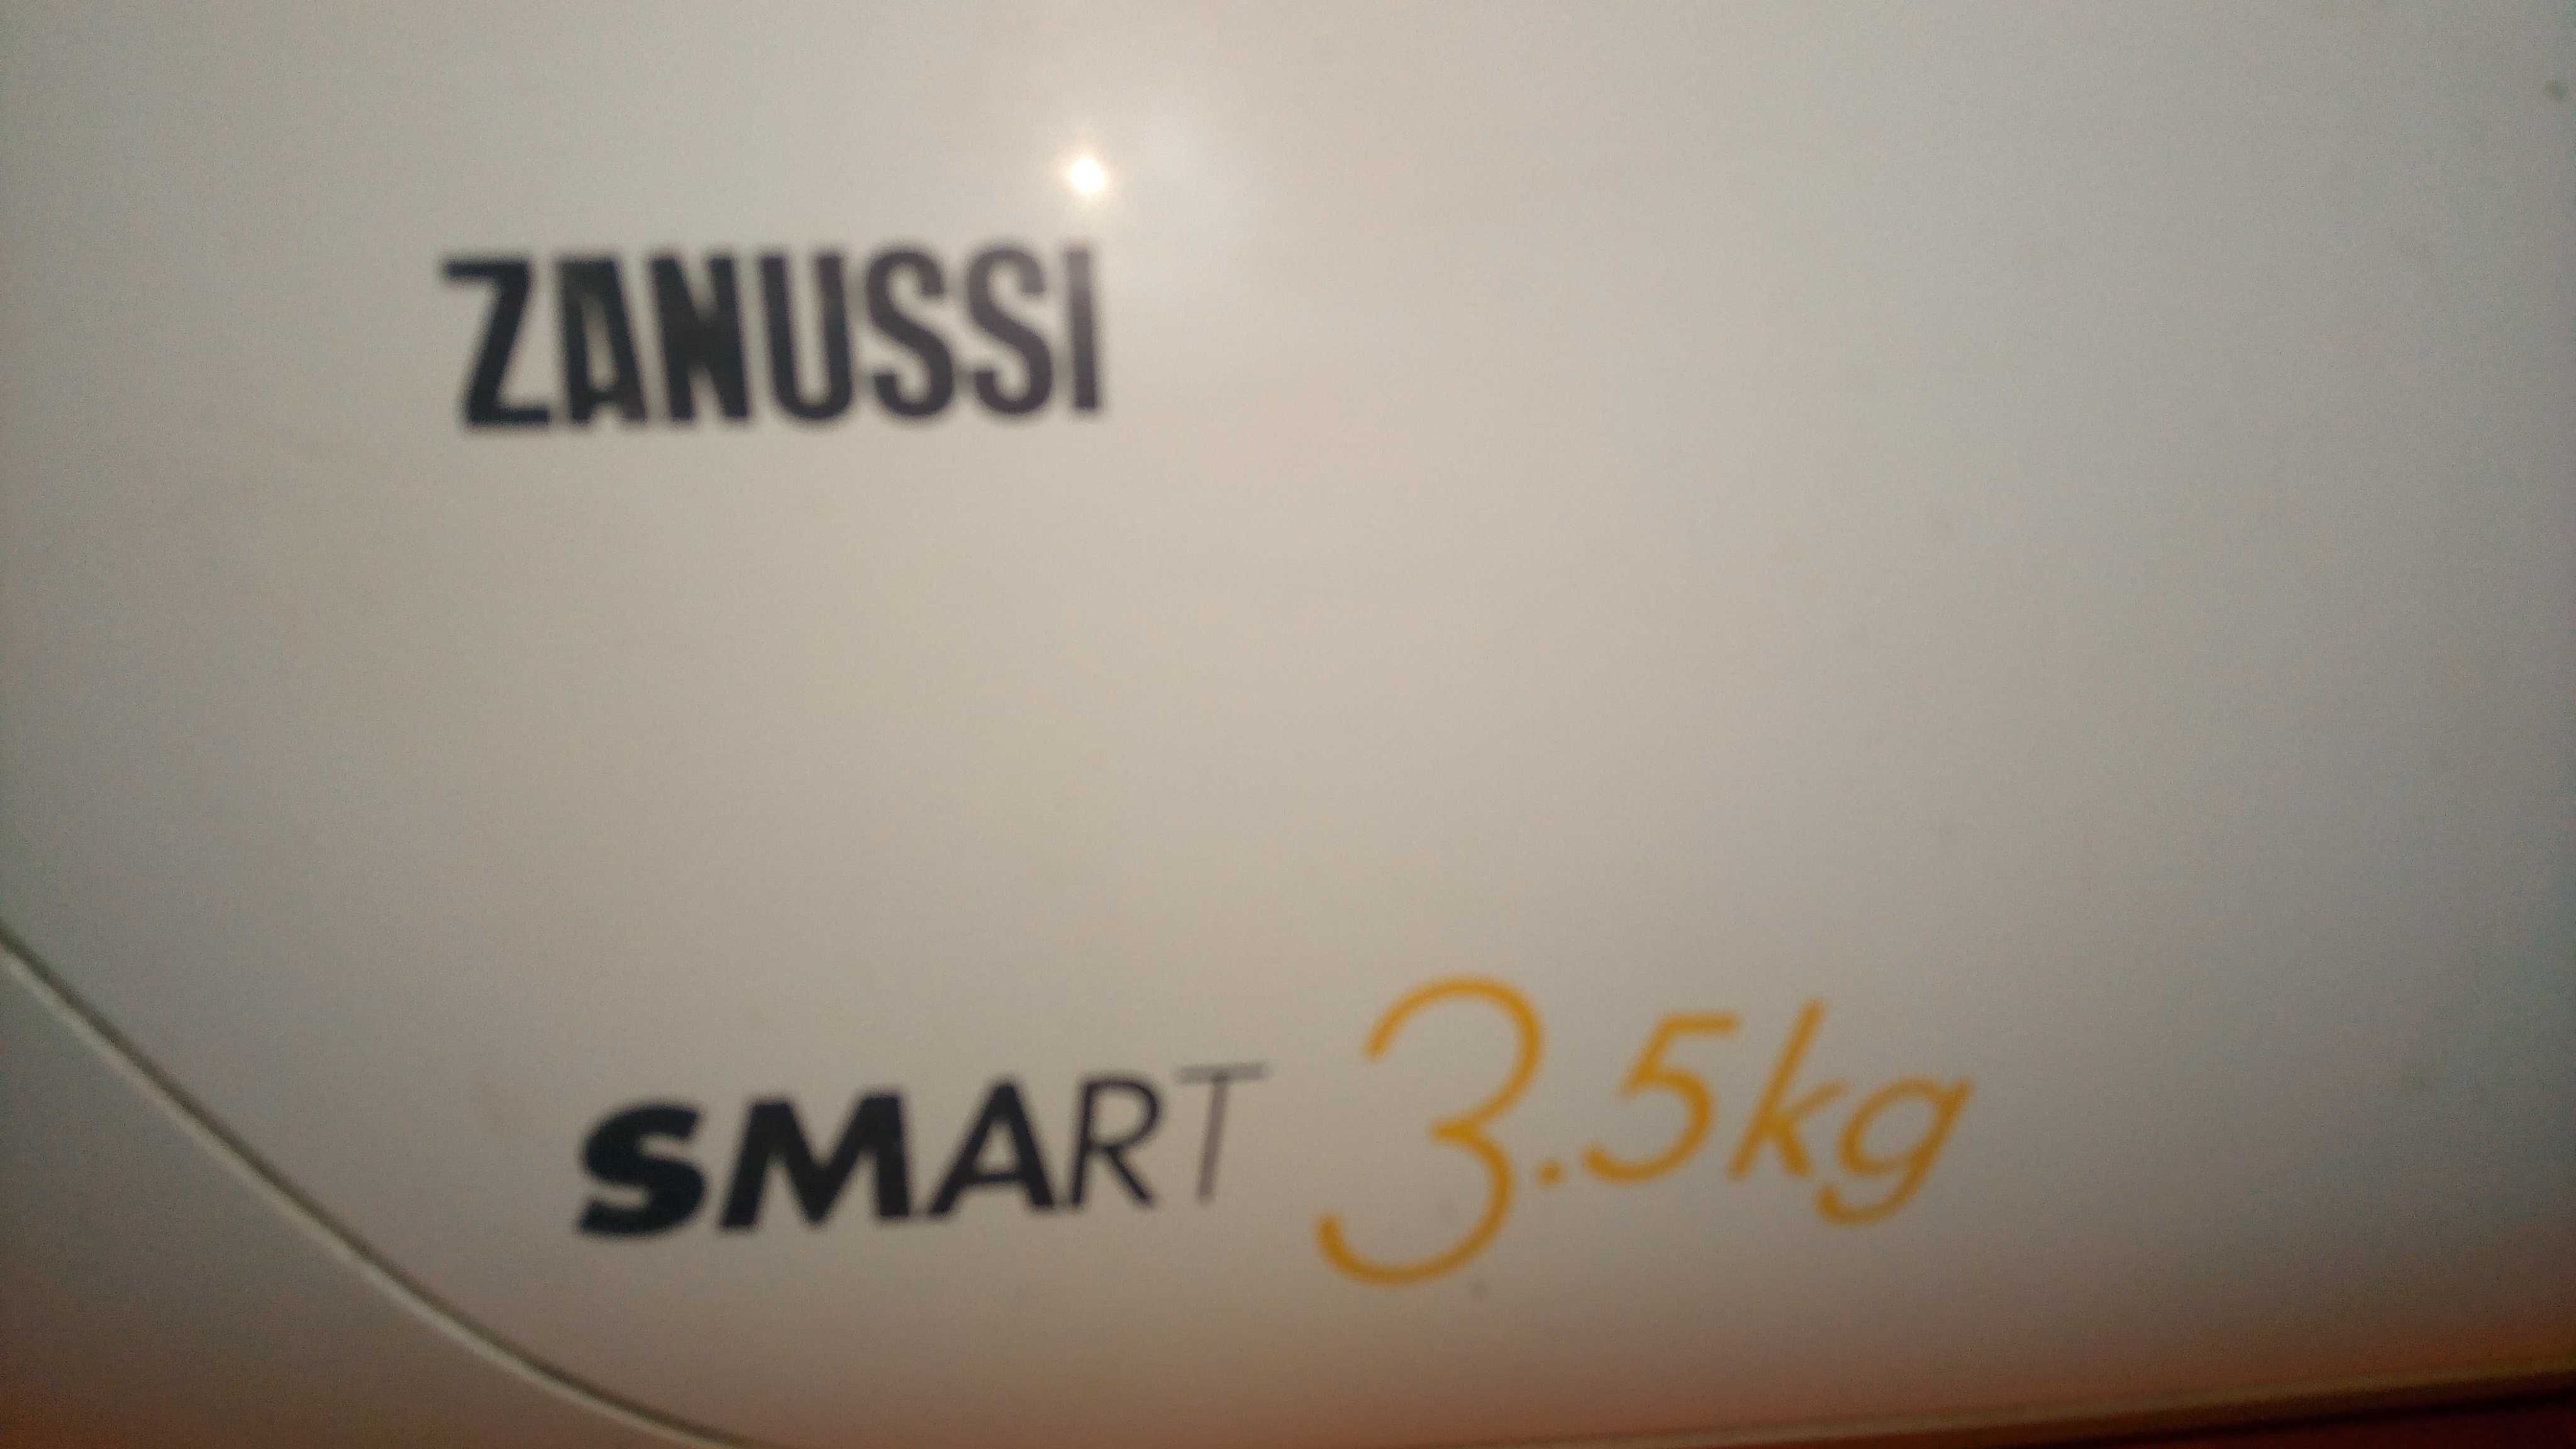 Электродвигатель к стиральной ZANUSSI smart 3,5кг